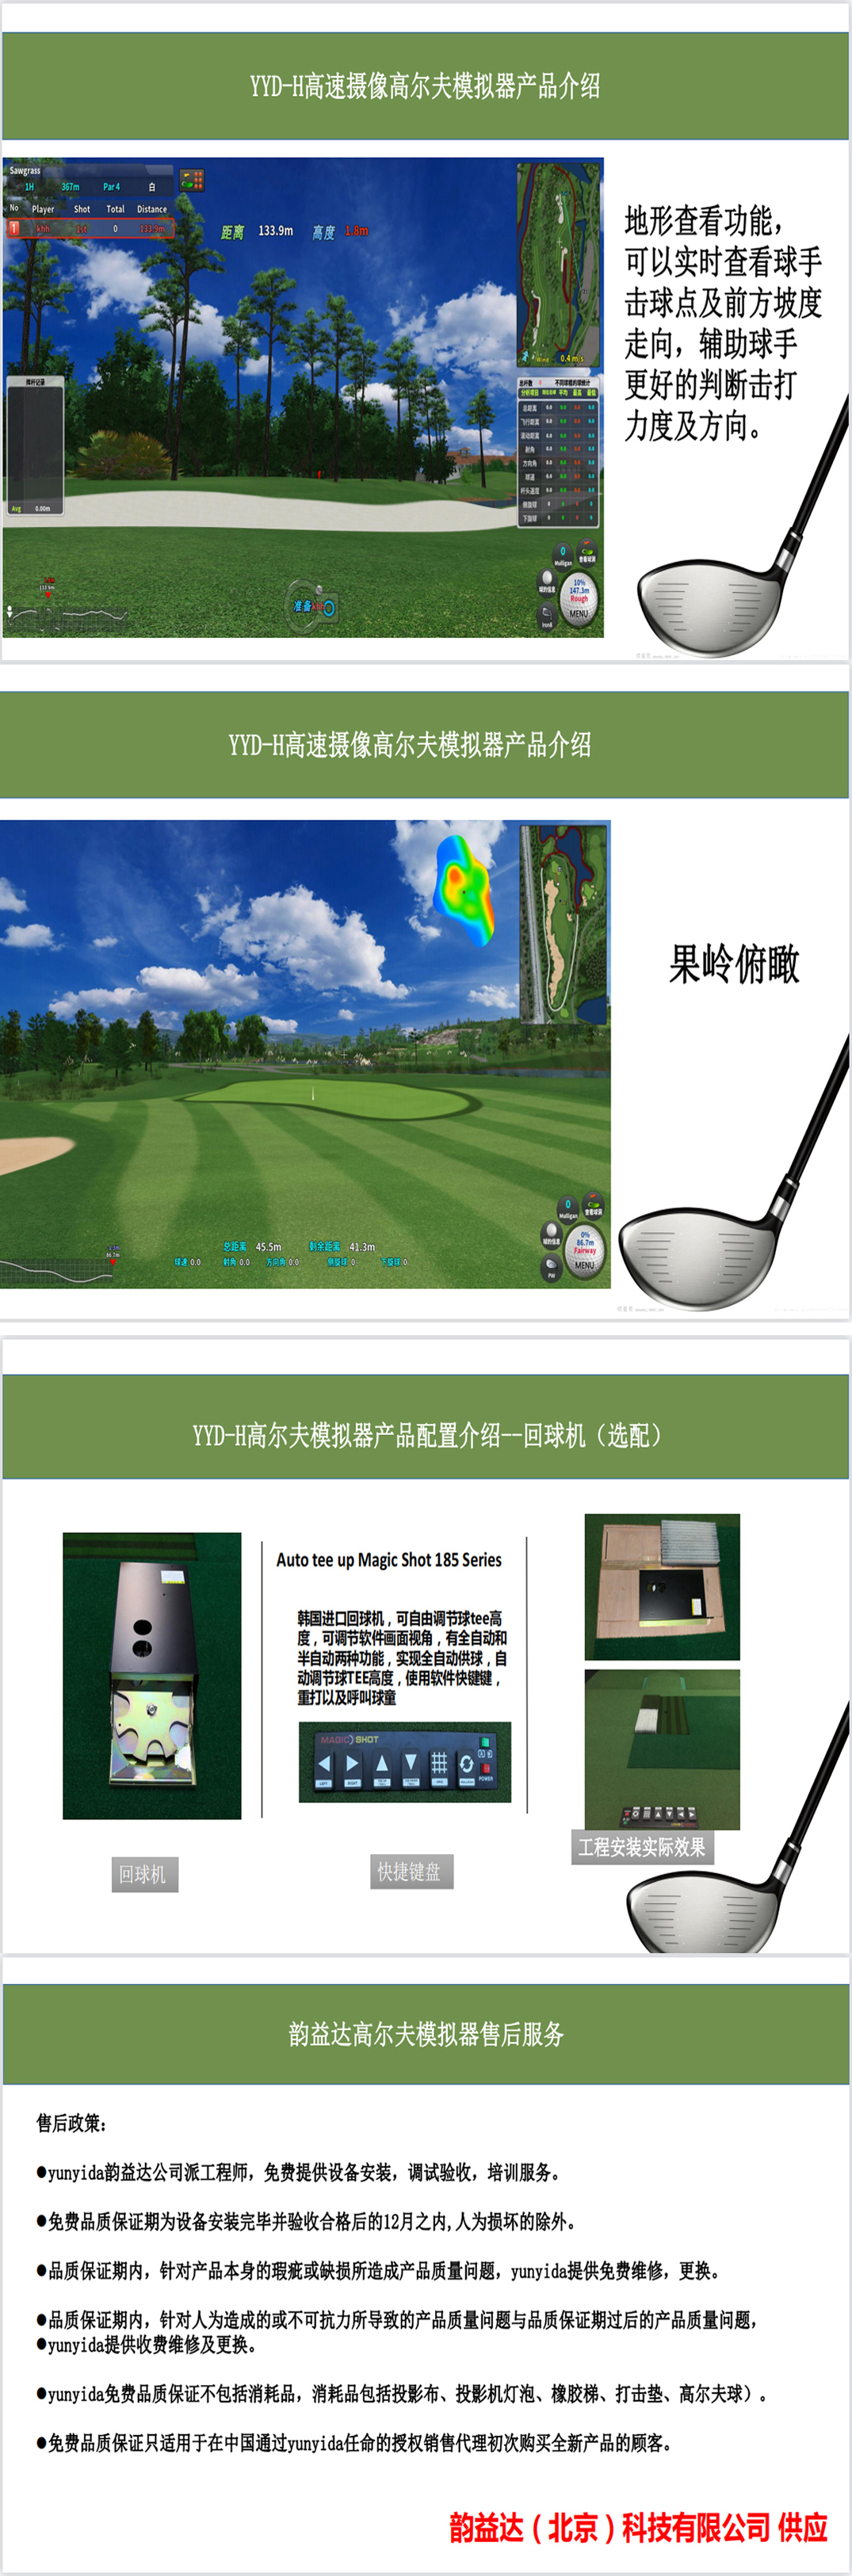 韩国室内高尔夫模拟器如何 43.jpg